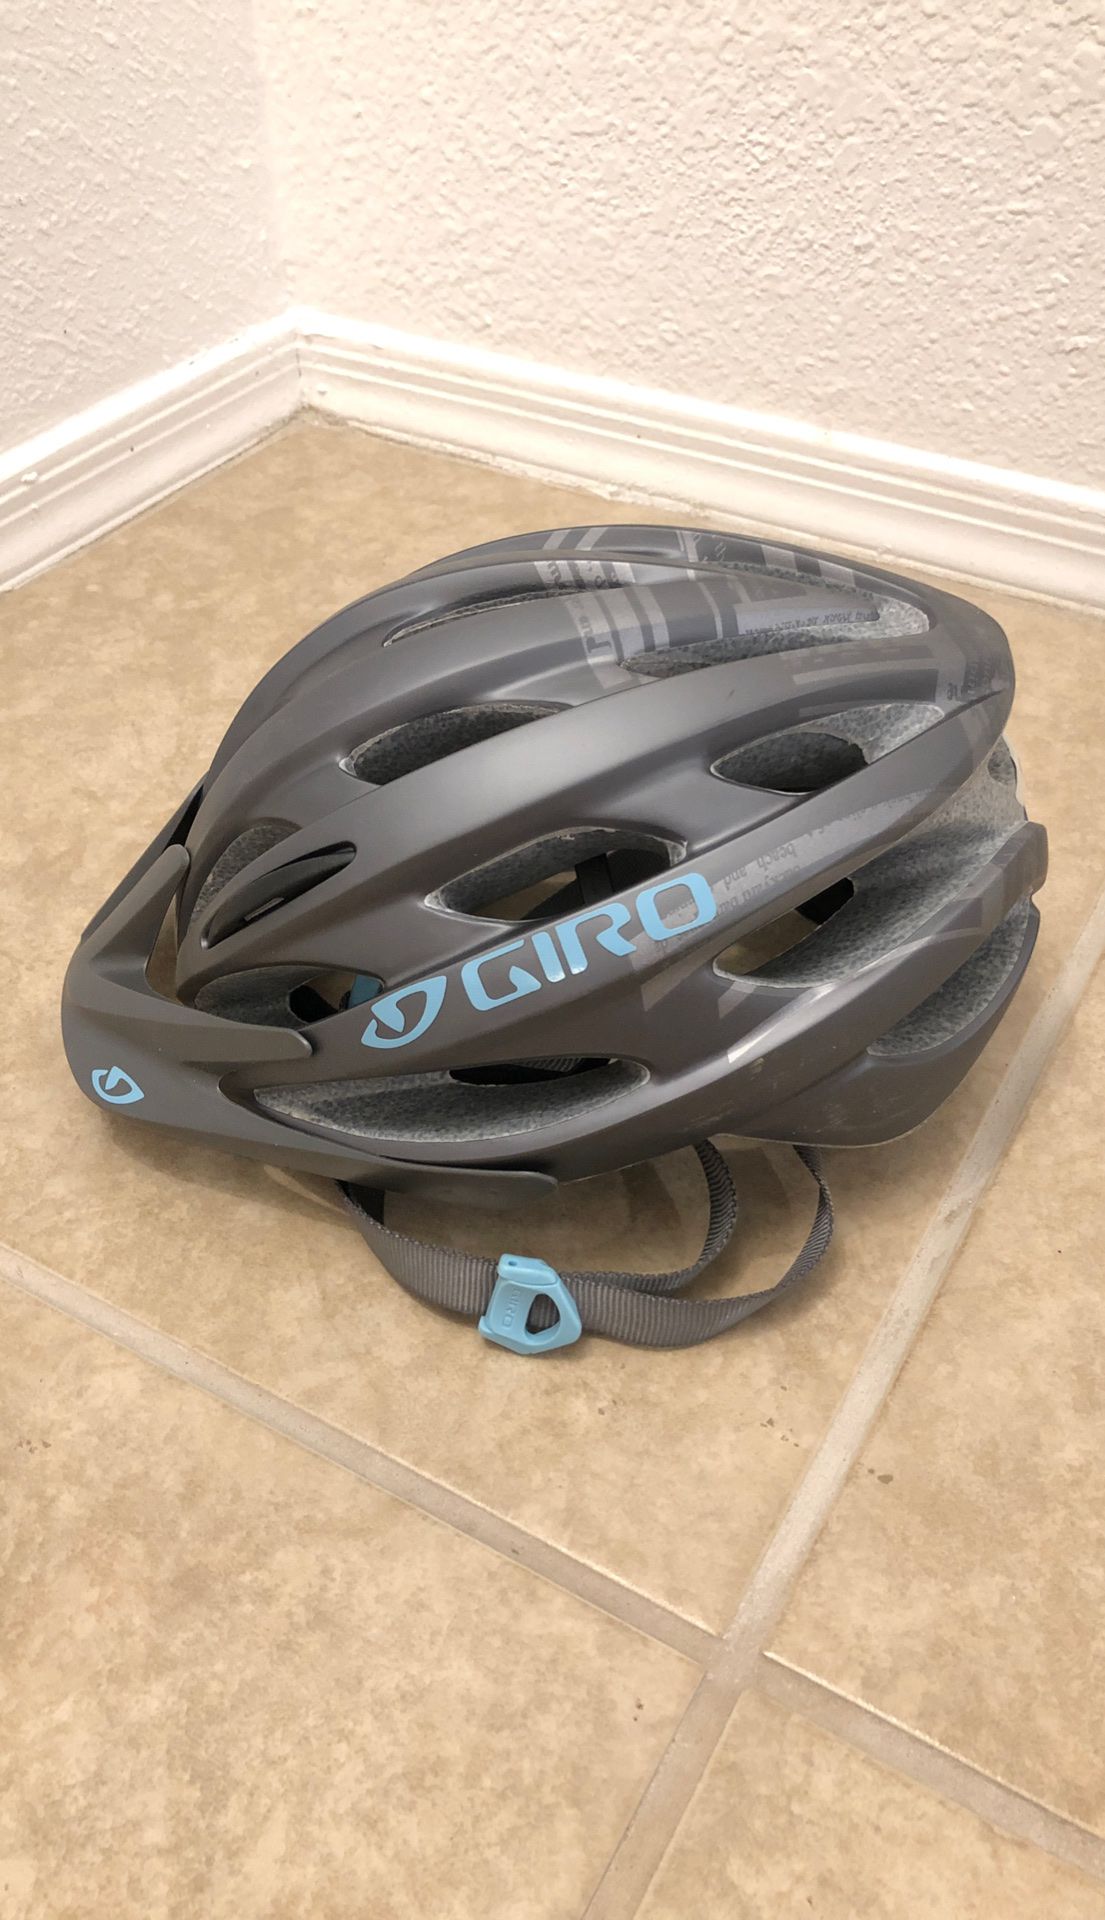 Women’s / Girls Giro Verona Bicycle Helmet Like New